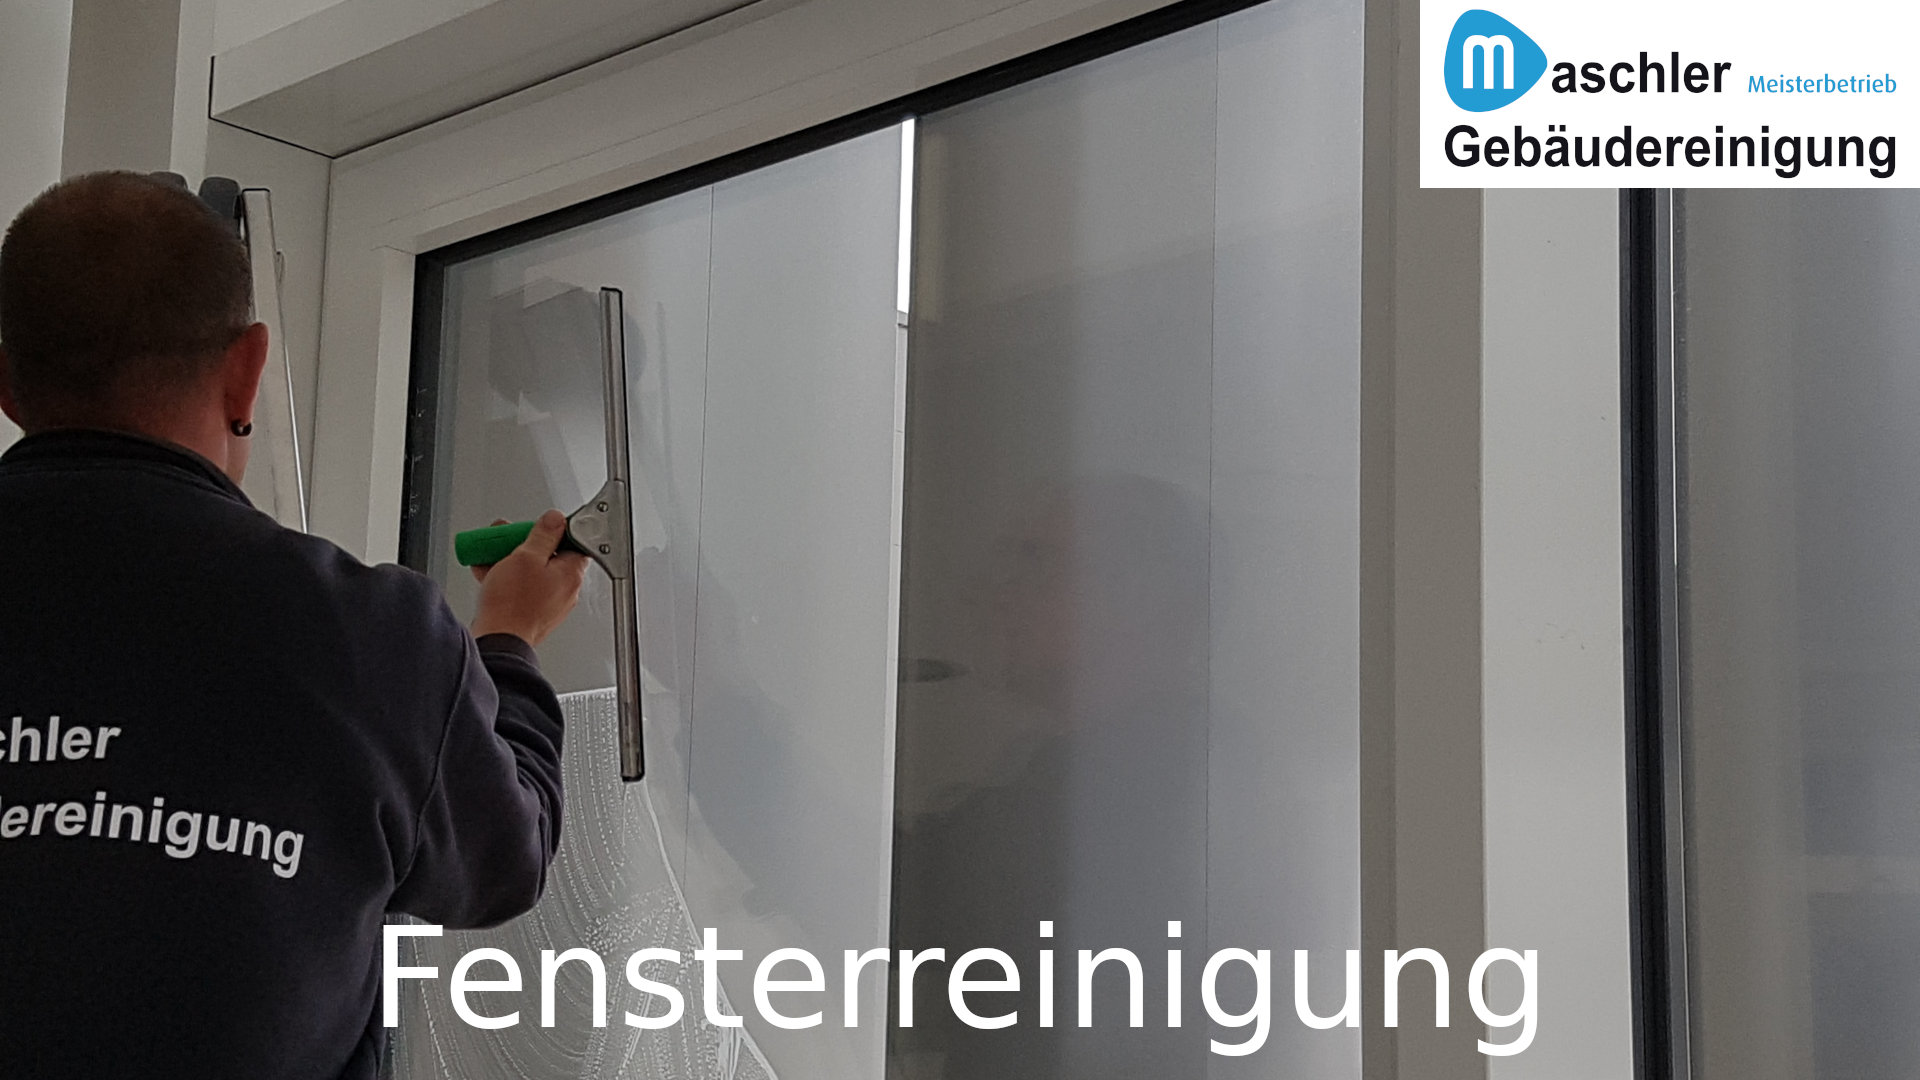 Bürofenster putzen - Gebäudereinigung Maschler Schwerin